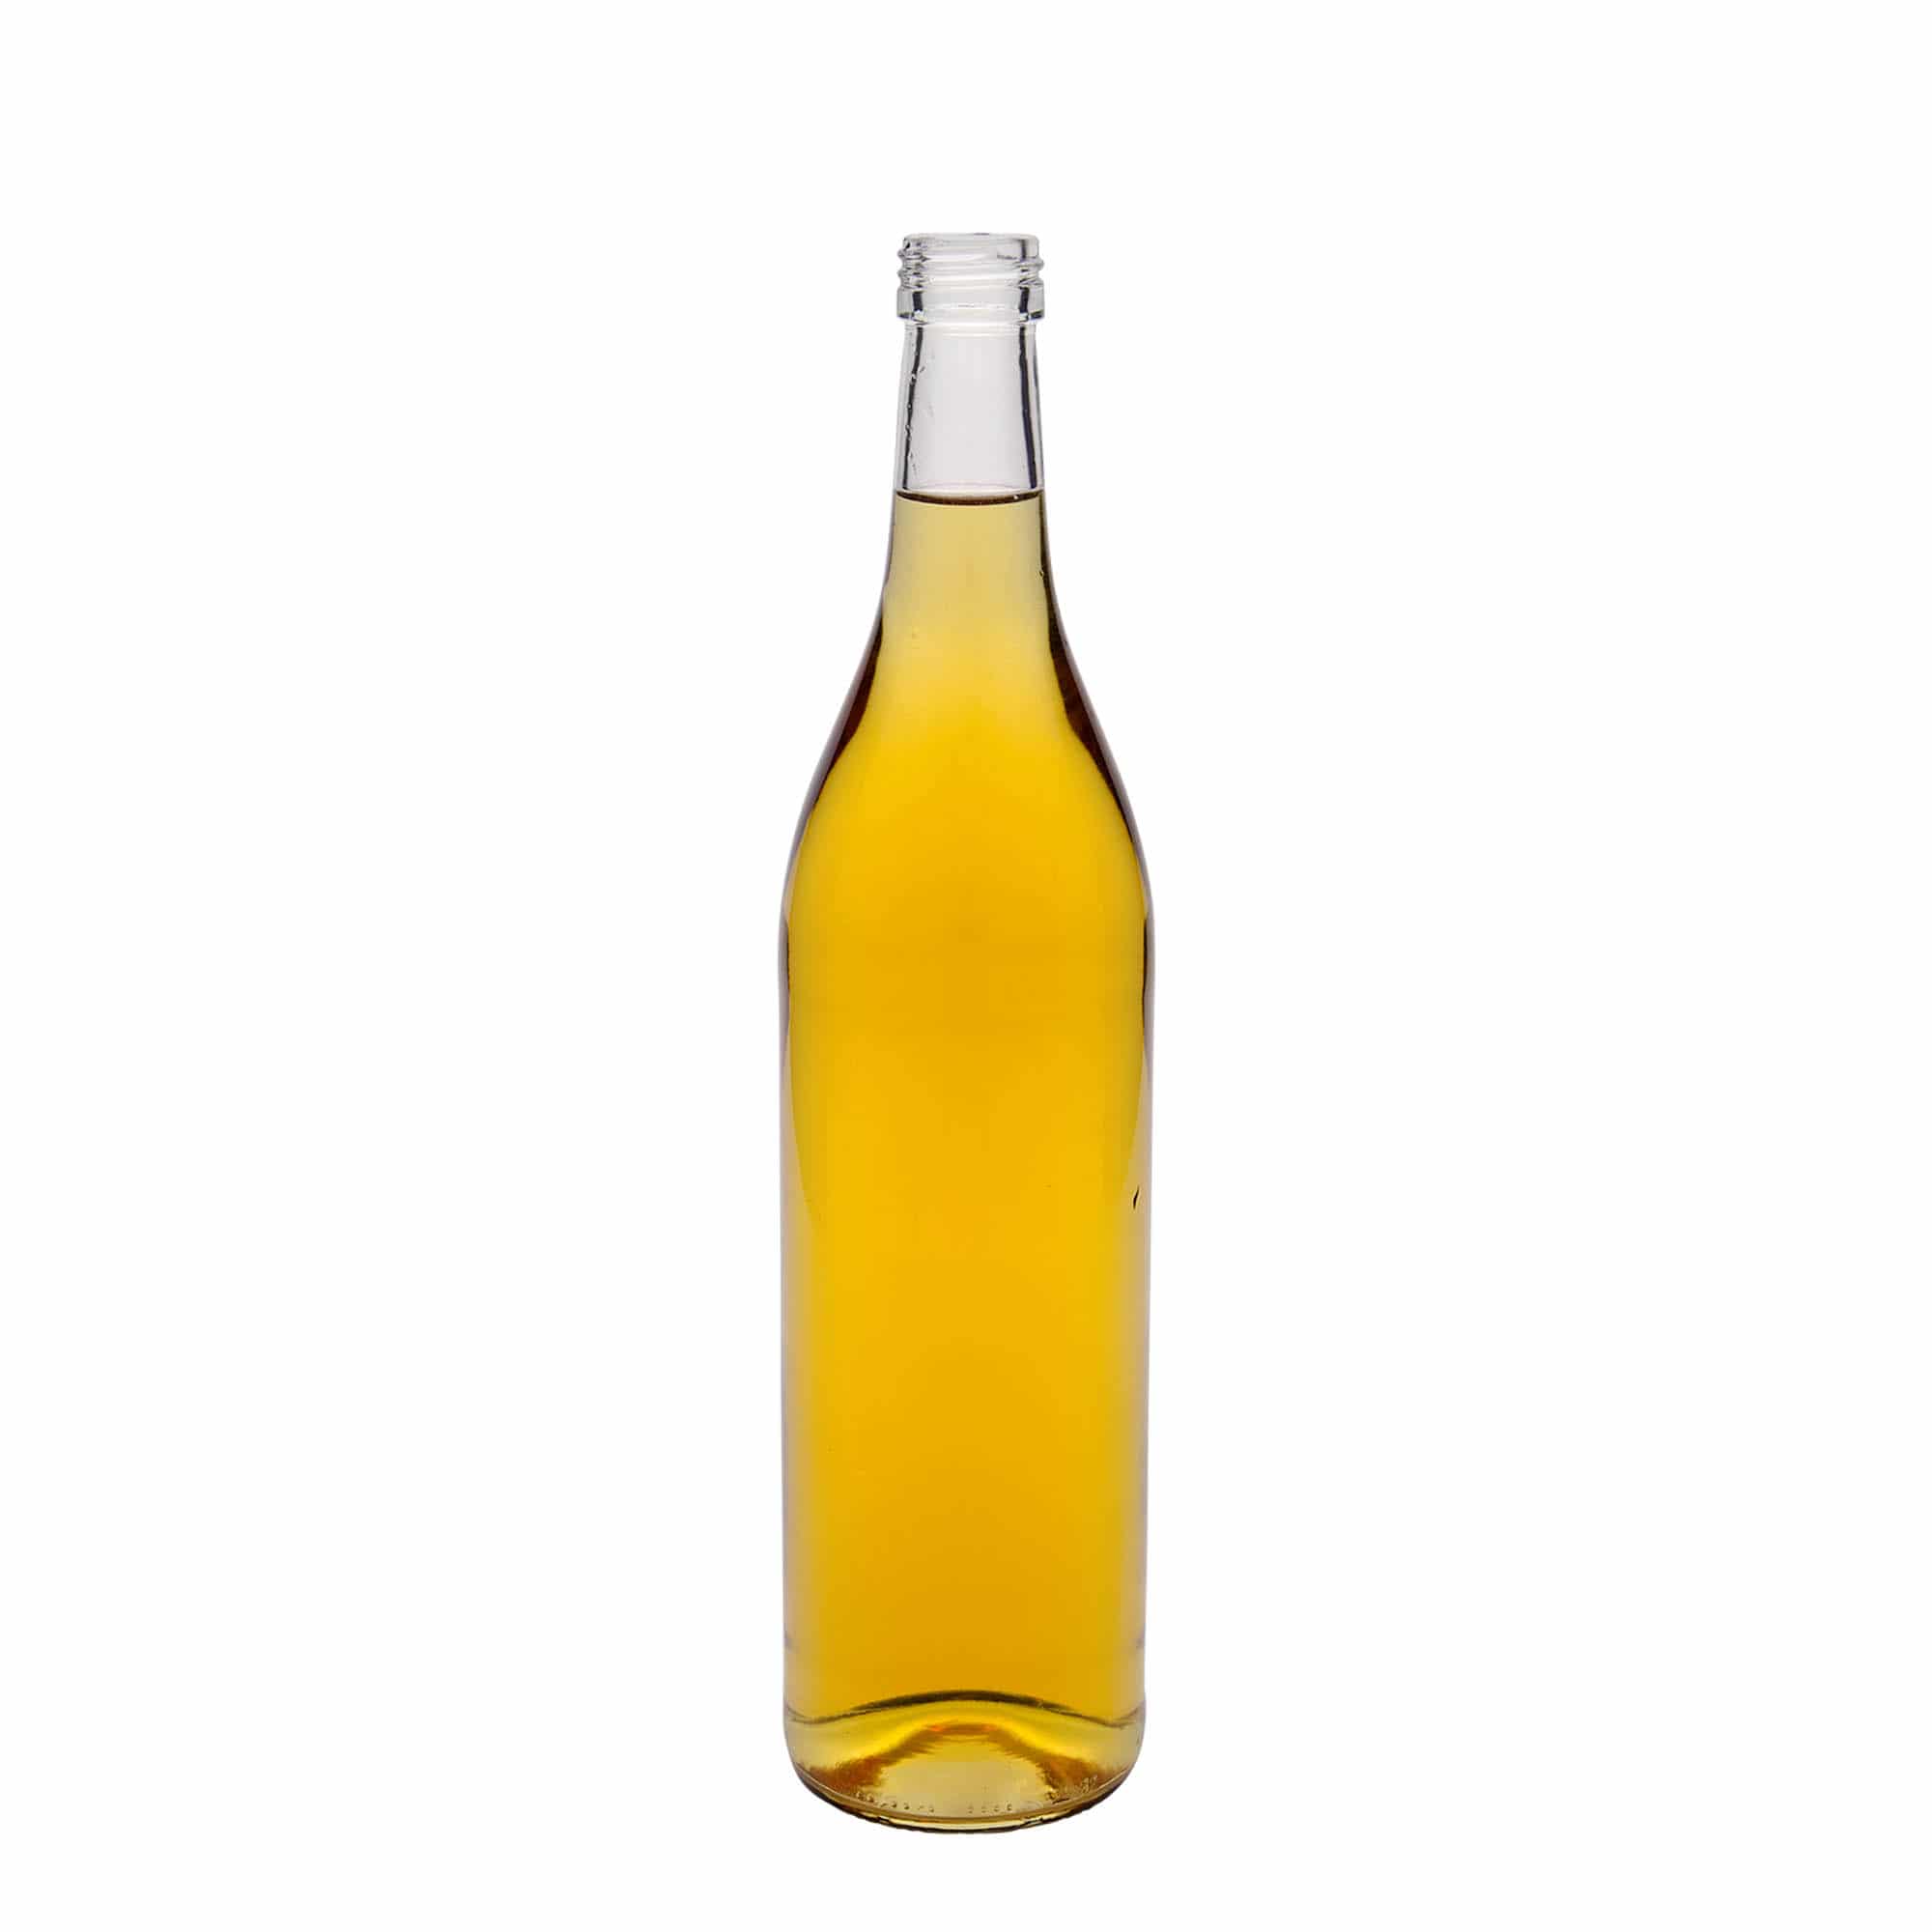 700 ml glass bottle 'Roger', closure: PP 28